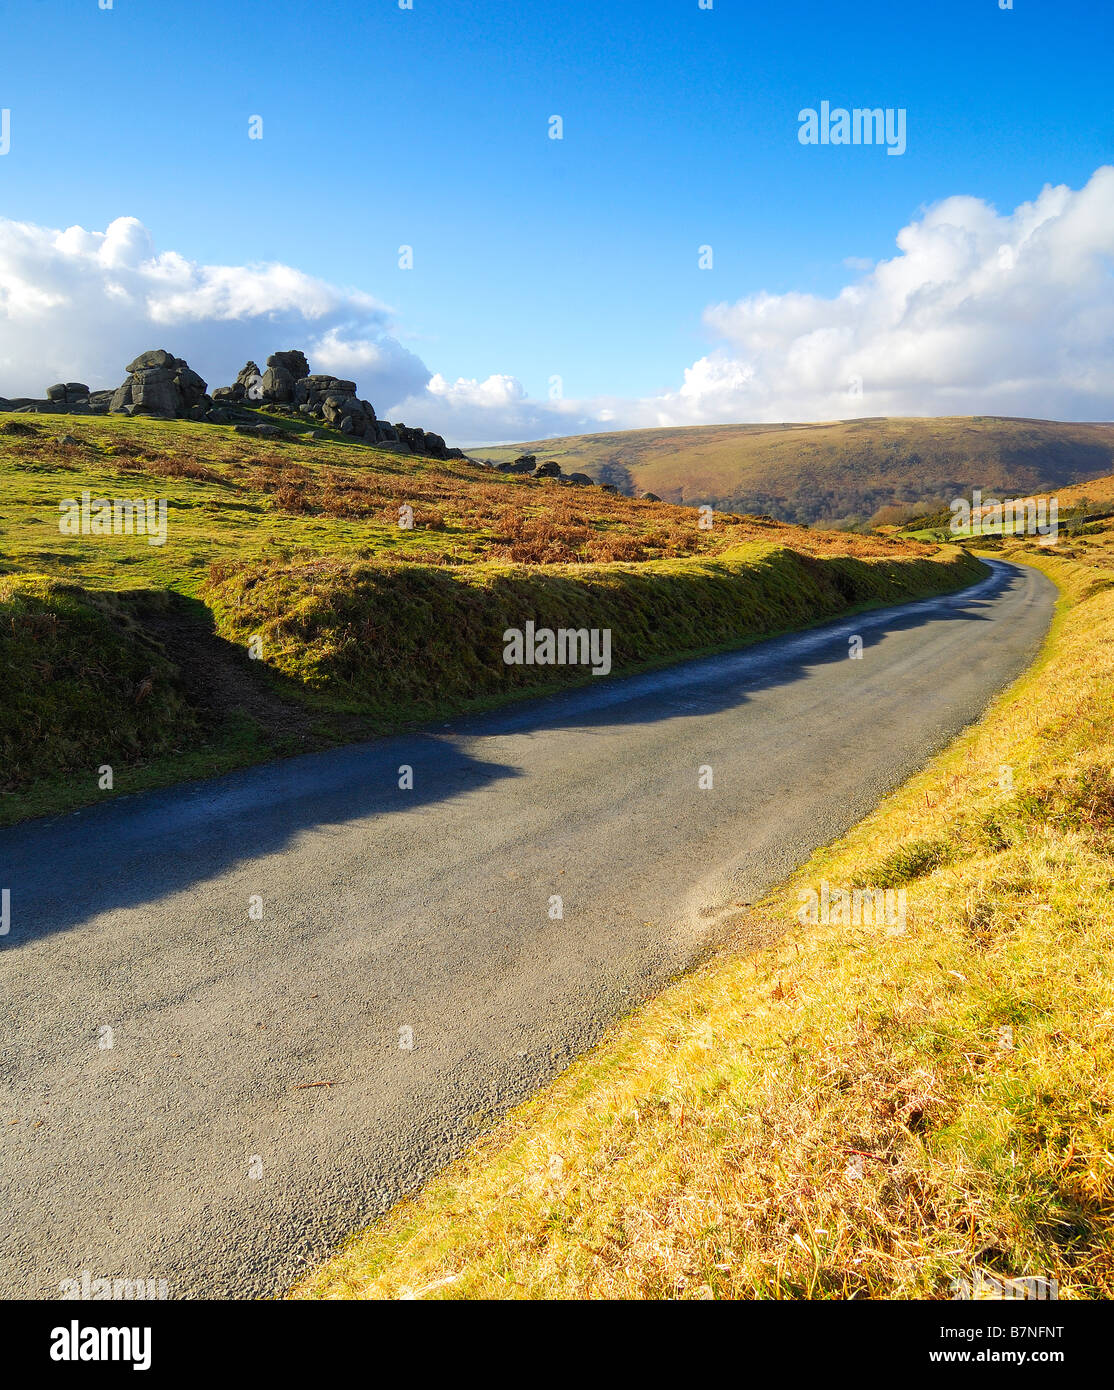 A narrow single track country road near Bonehill Rocks on Dartmoor Stock Photo